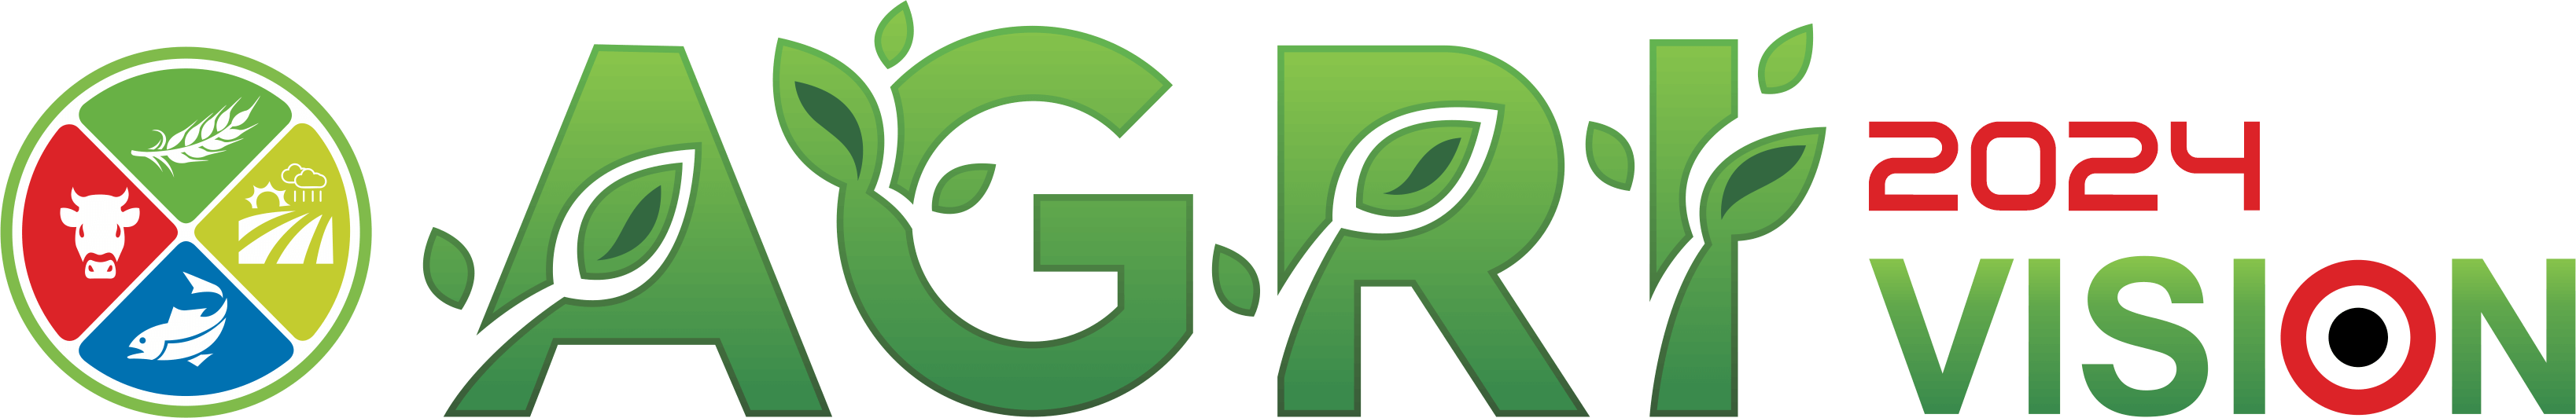 AGRI VISION 2024 Logo